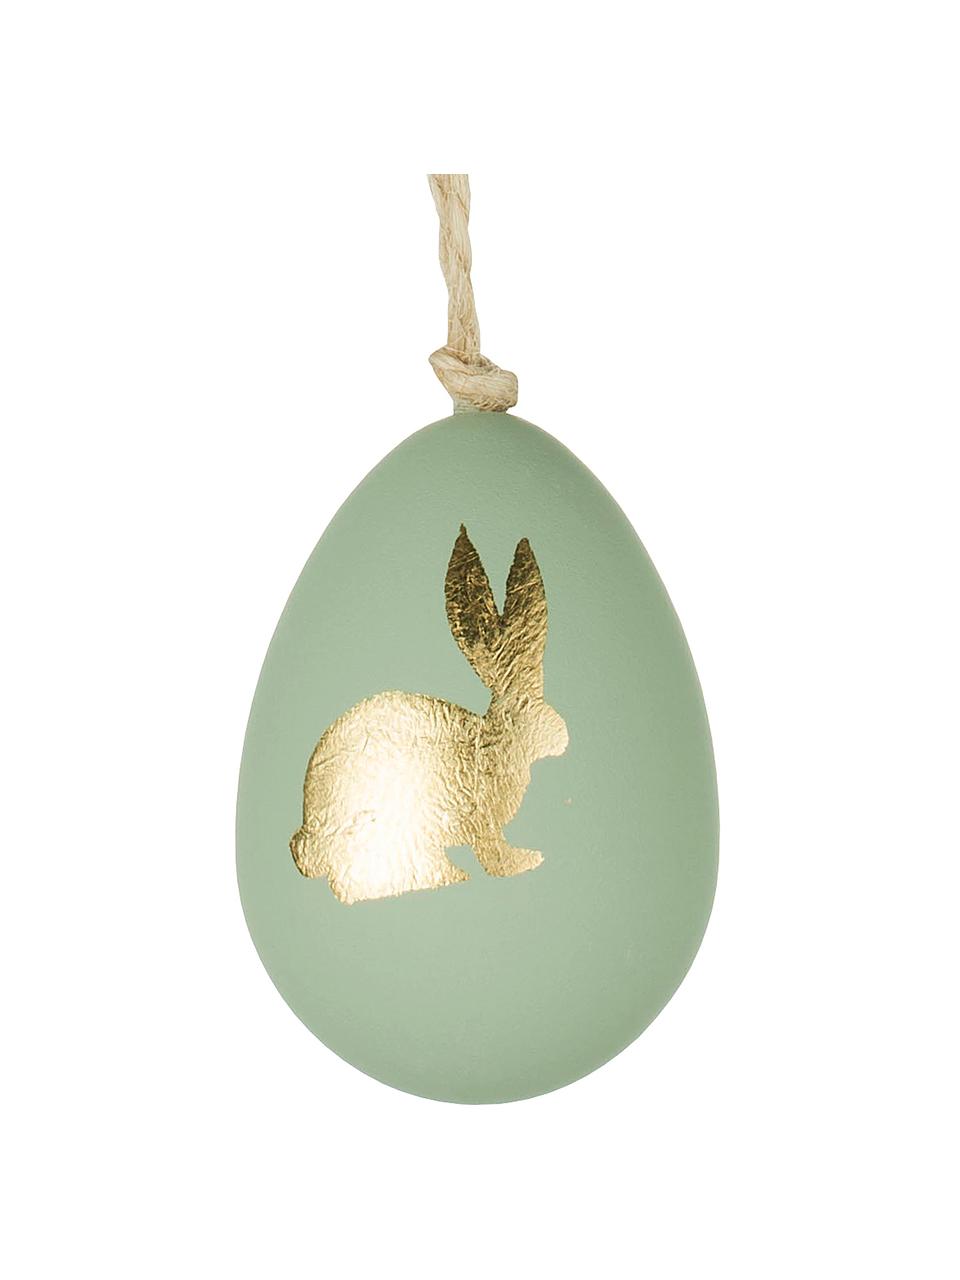 Závěsné ozdoby Bunny, 3 ks, Umělá hmota, Zelená, zlatá, Ø 4 cm